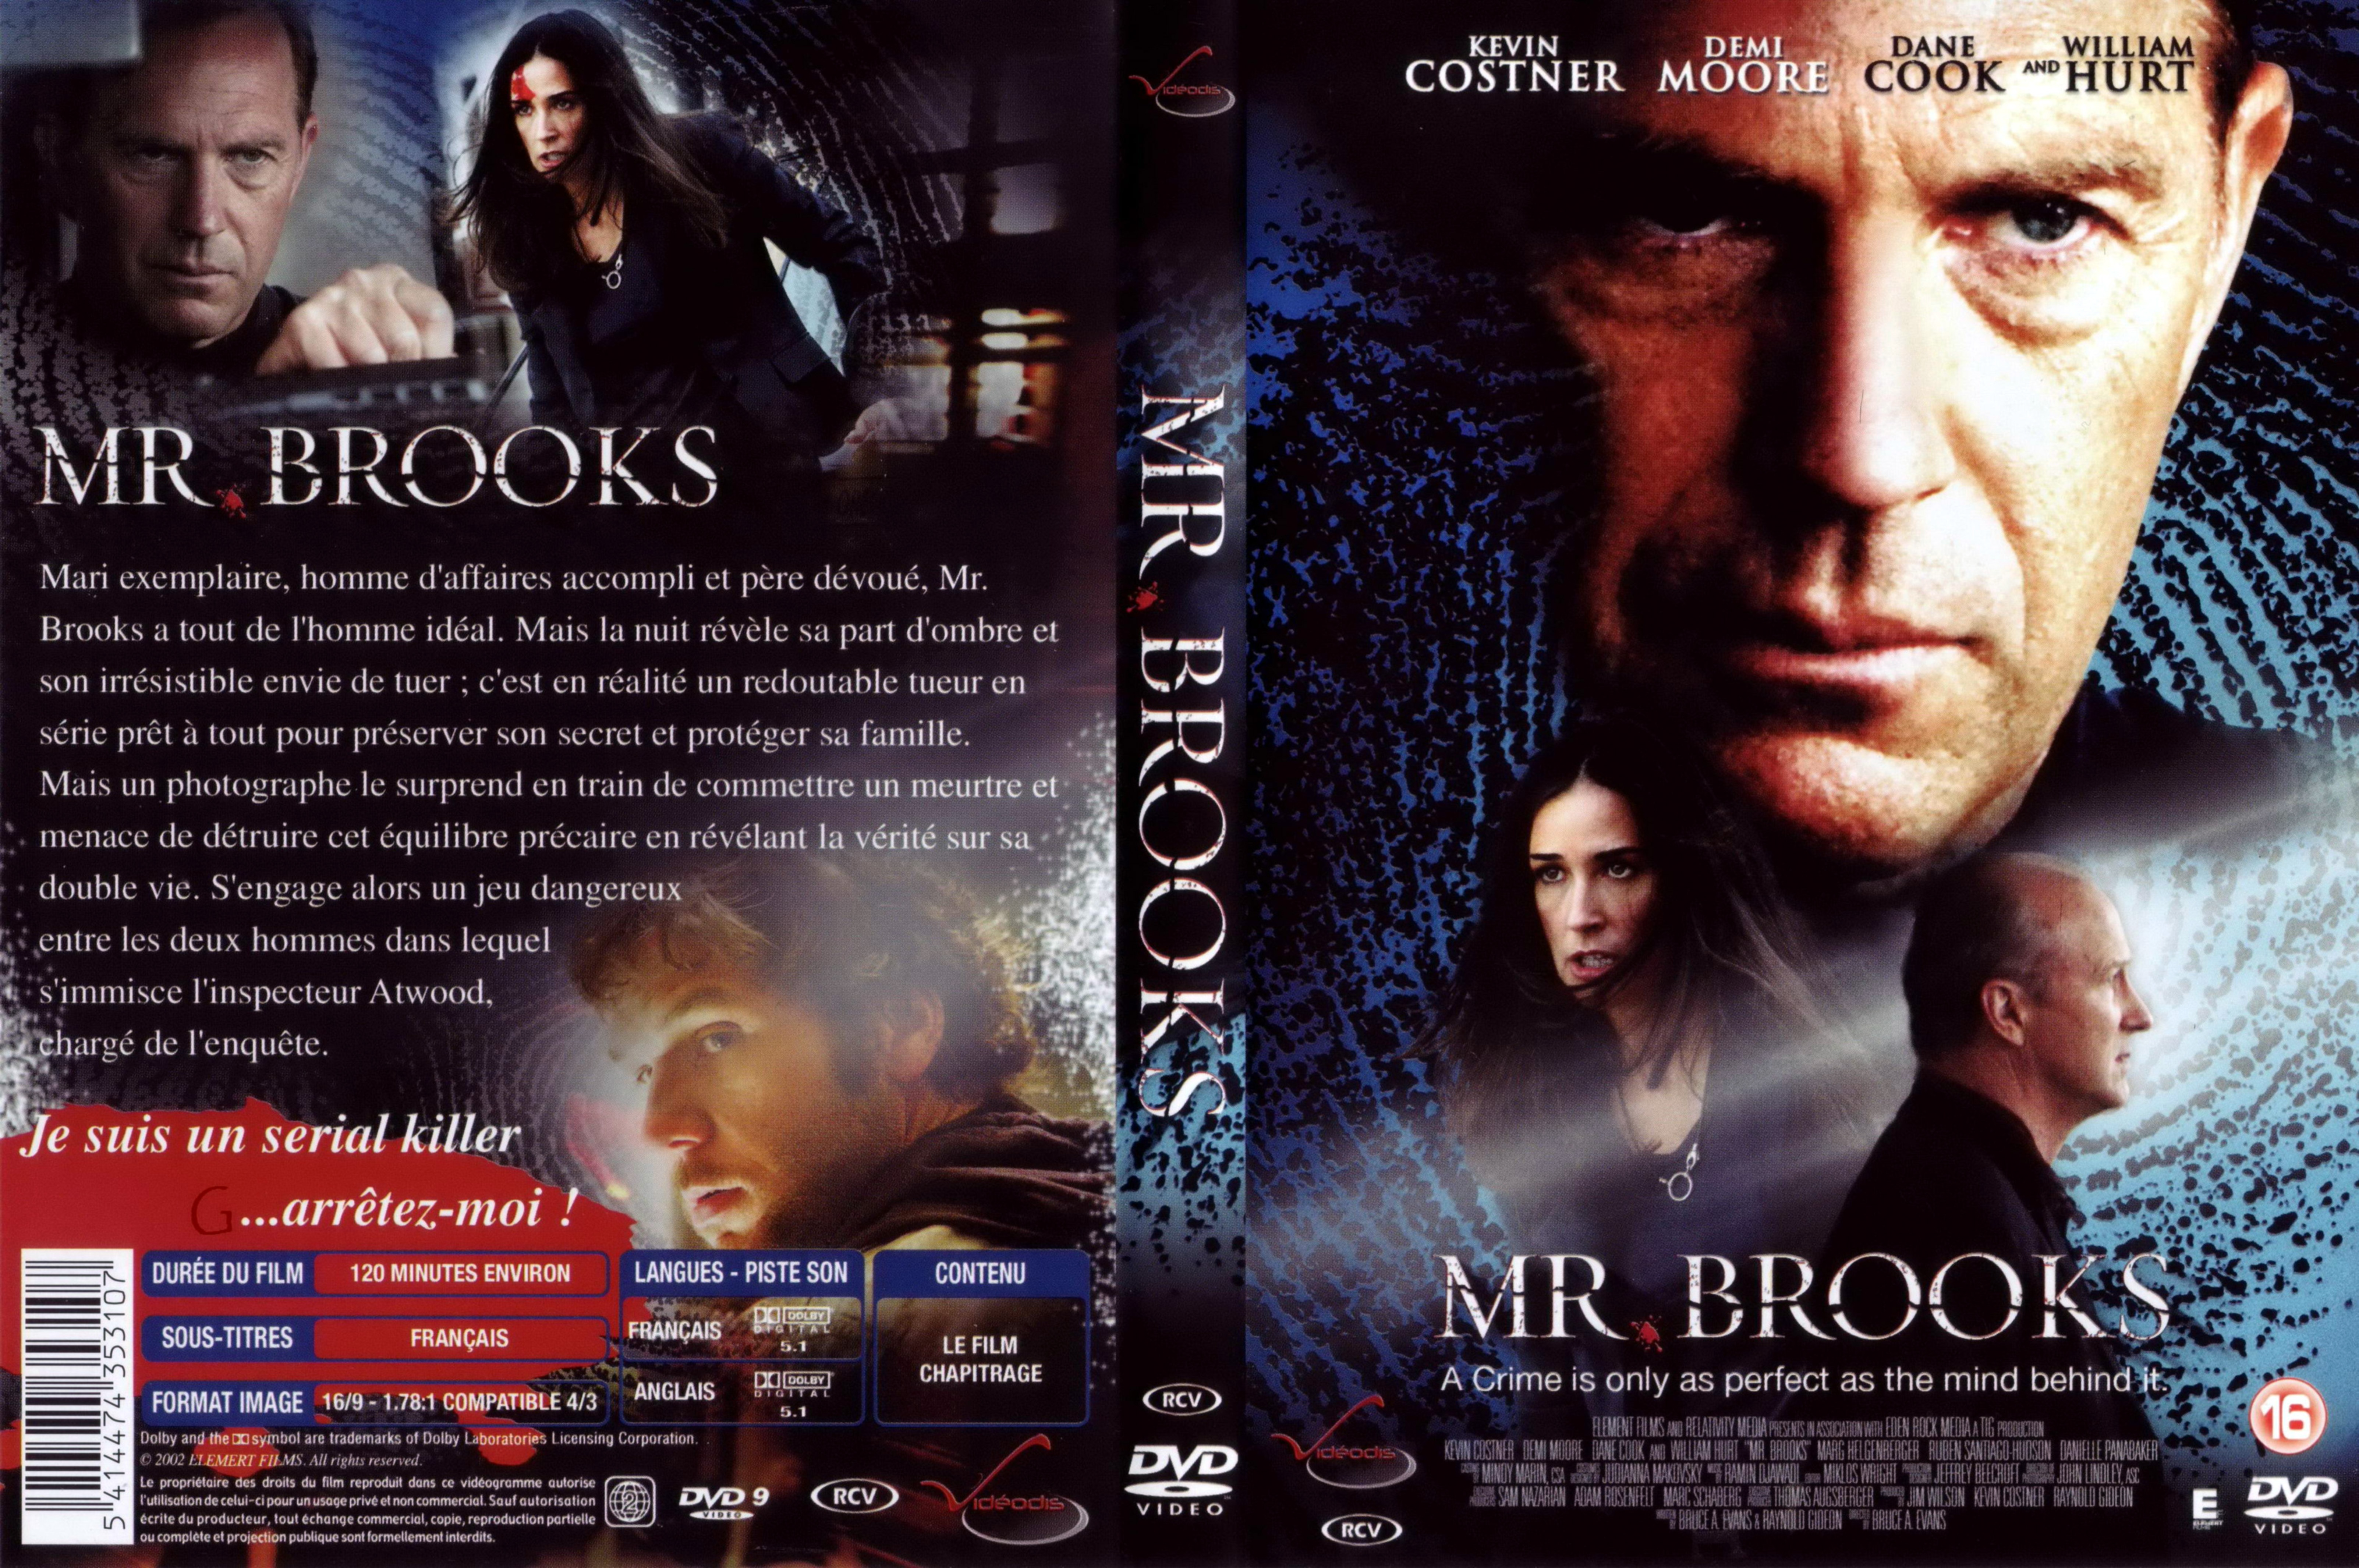 Jaquette DVD Mr Brooks v2